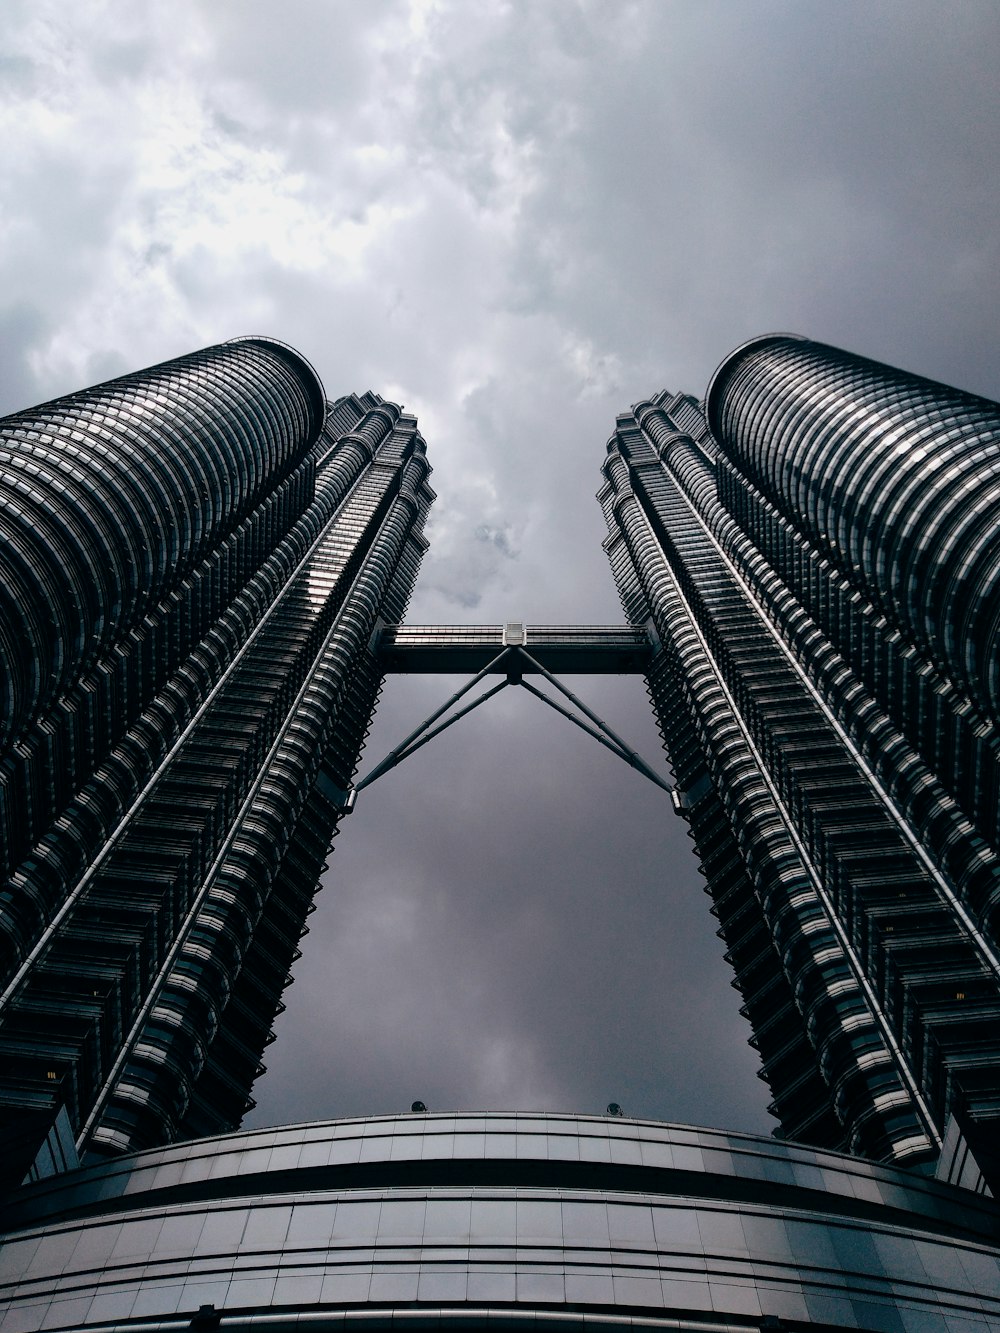 말레이시아 페트로나스 타워의 낮은 각도 회색조 사진